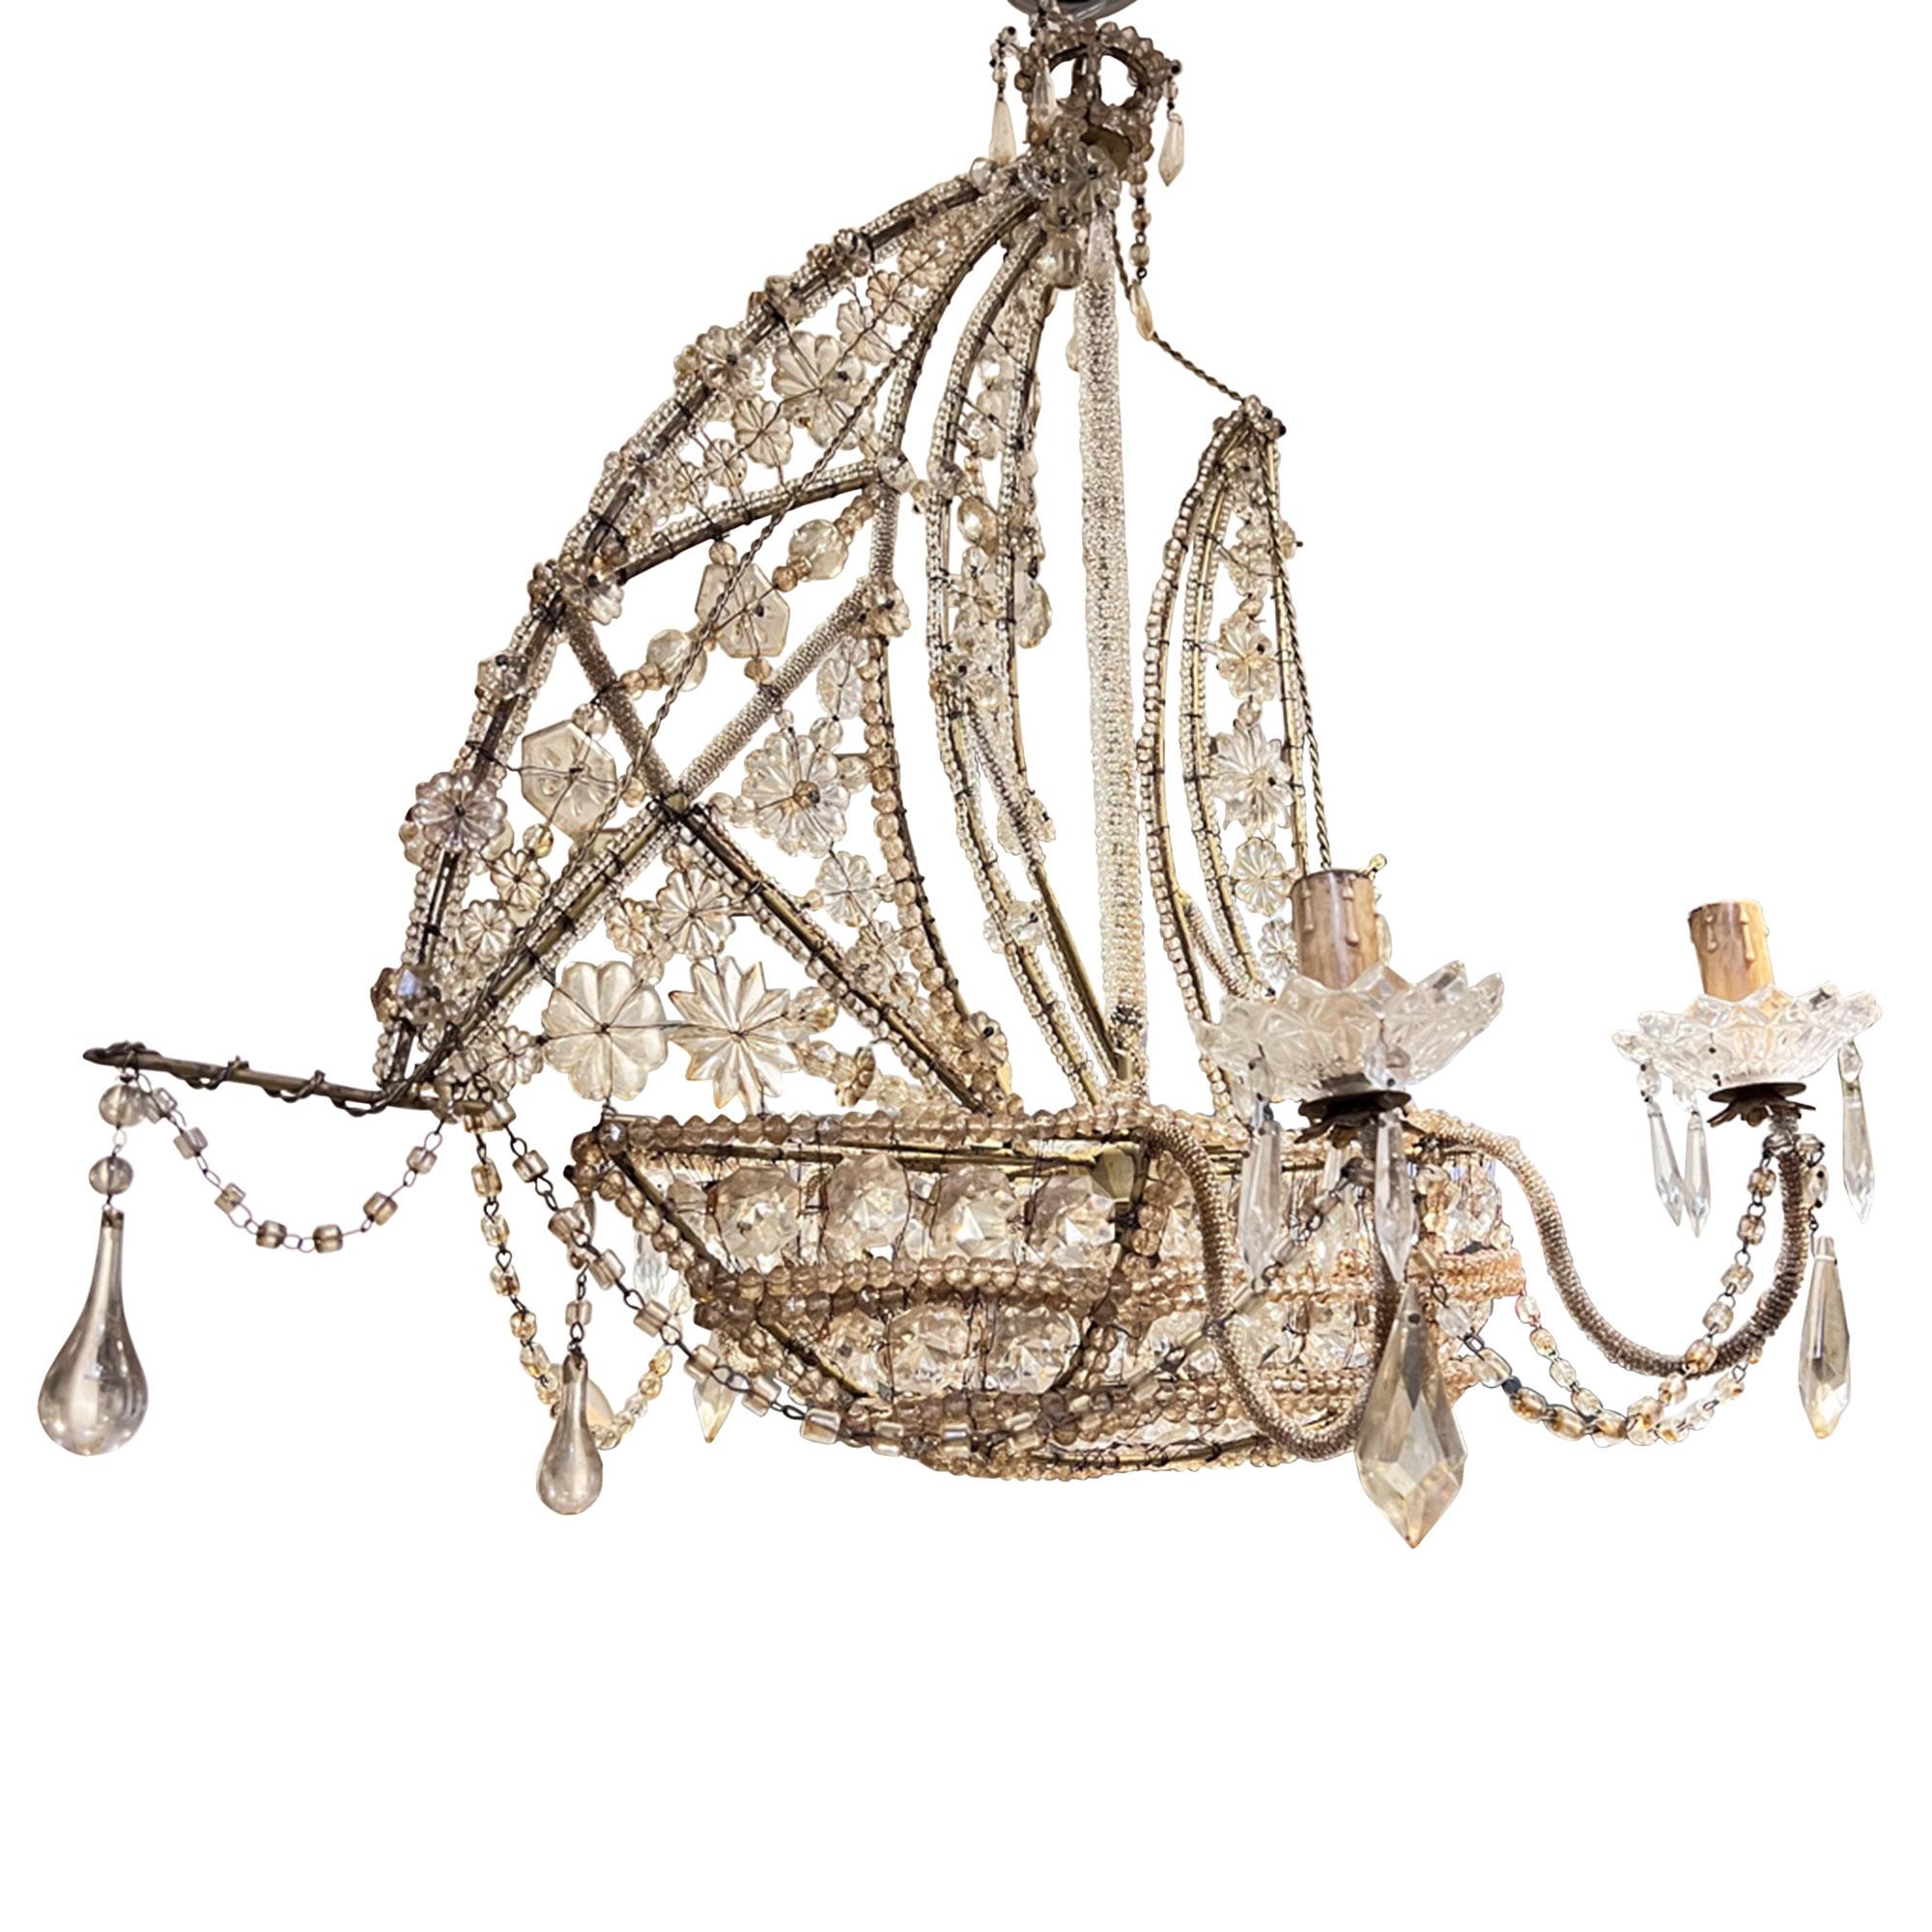 Ce lustre très décoratif a été fabriqué à la main en Italie dans les années 1950. La coque, le gréement et les voiles sont ornés de superbes perles, et un intéressant nid de pie est placé au sommet du mât, qui est recouvert de minuscules perles.